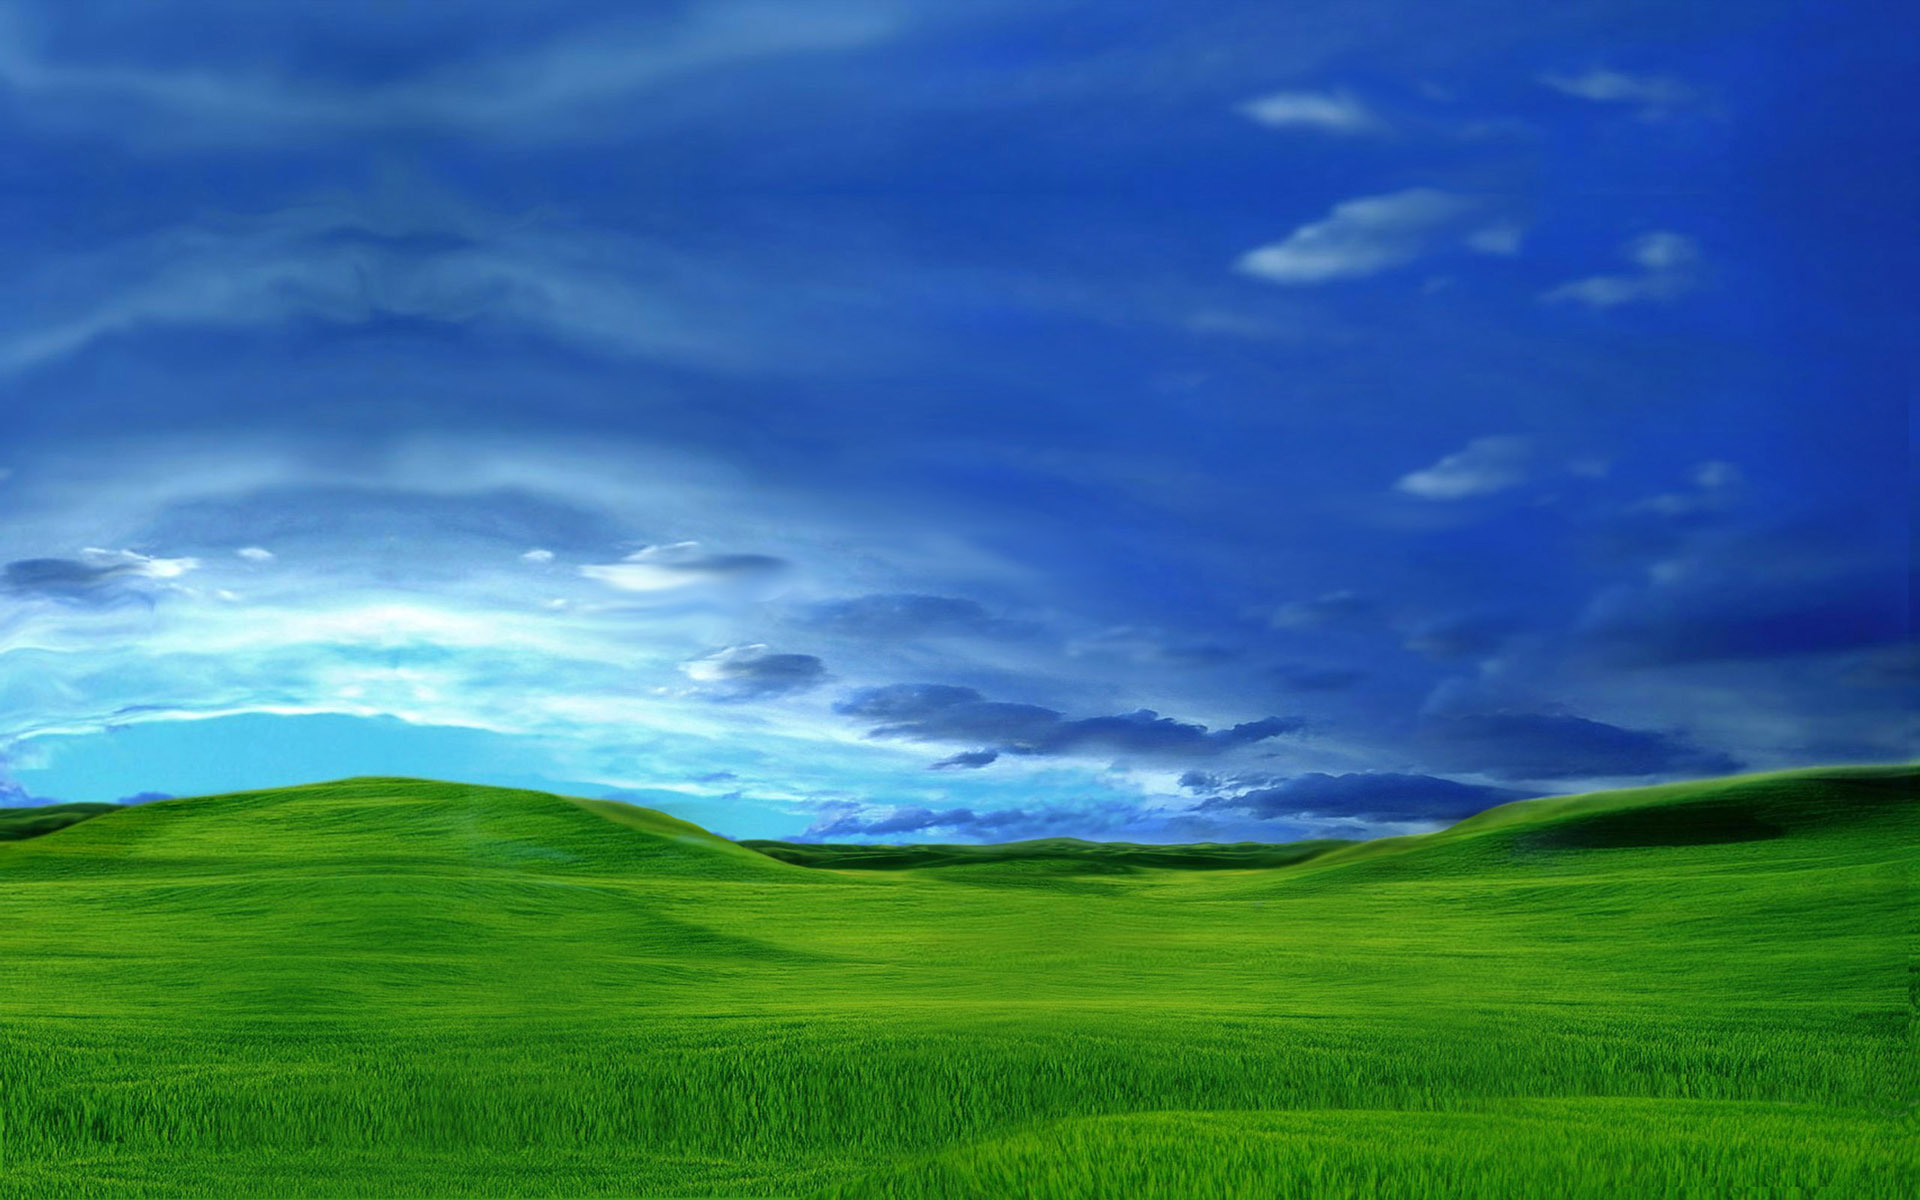 In Windows Xp Style X Landscape